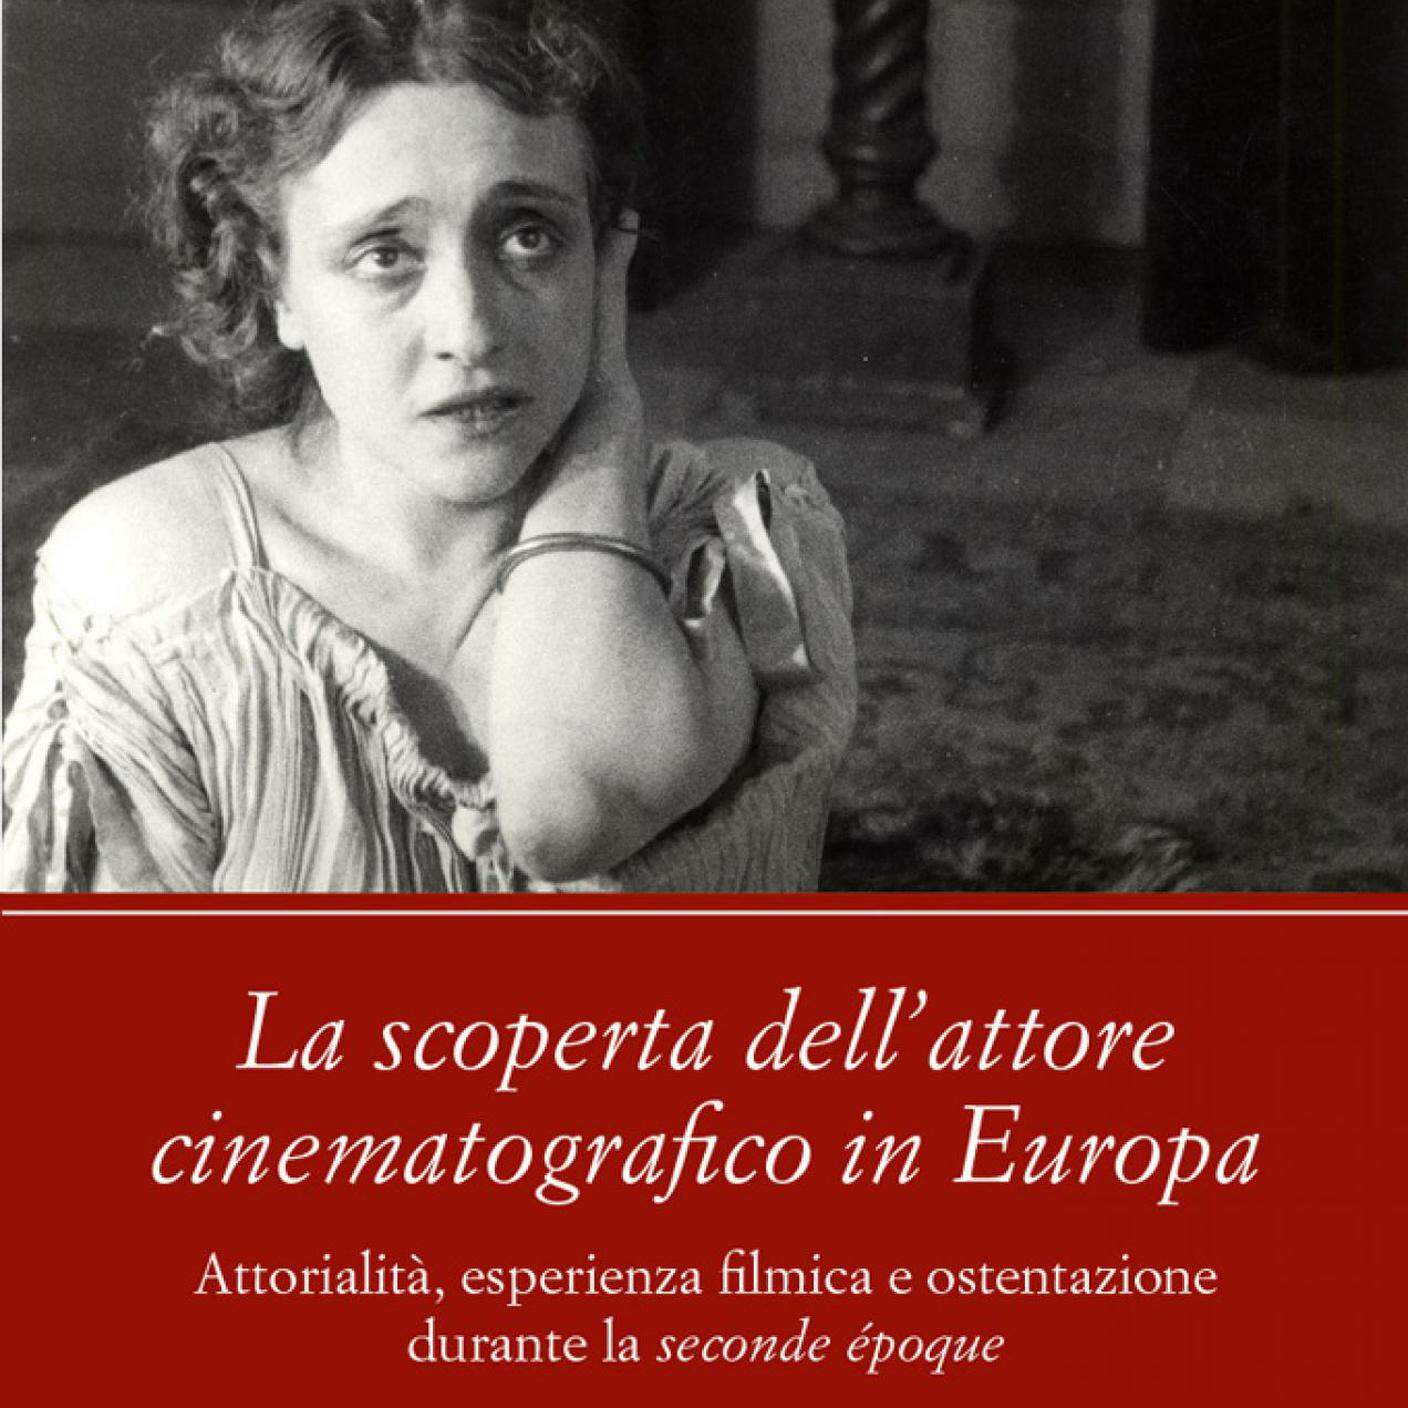 “La scoperta dell’attore cinematografico in Europa”, Mattia Lento, Ed. edizioniets.com (dettaglio copertina)